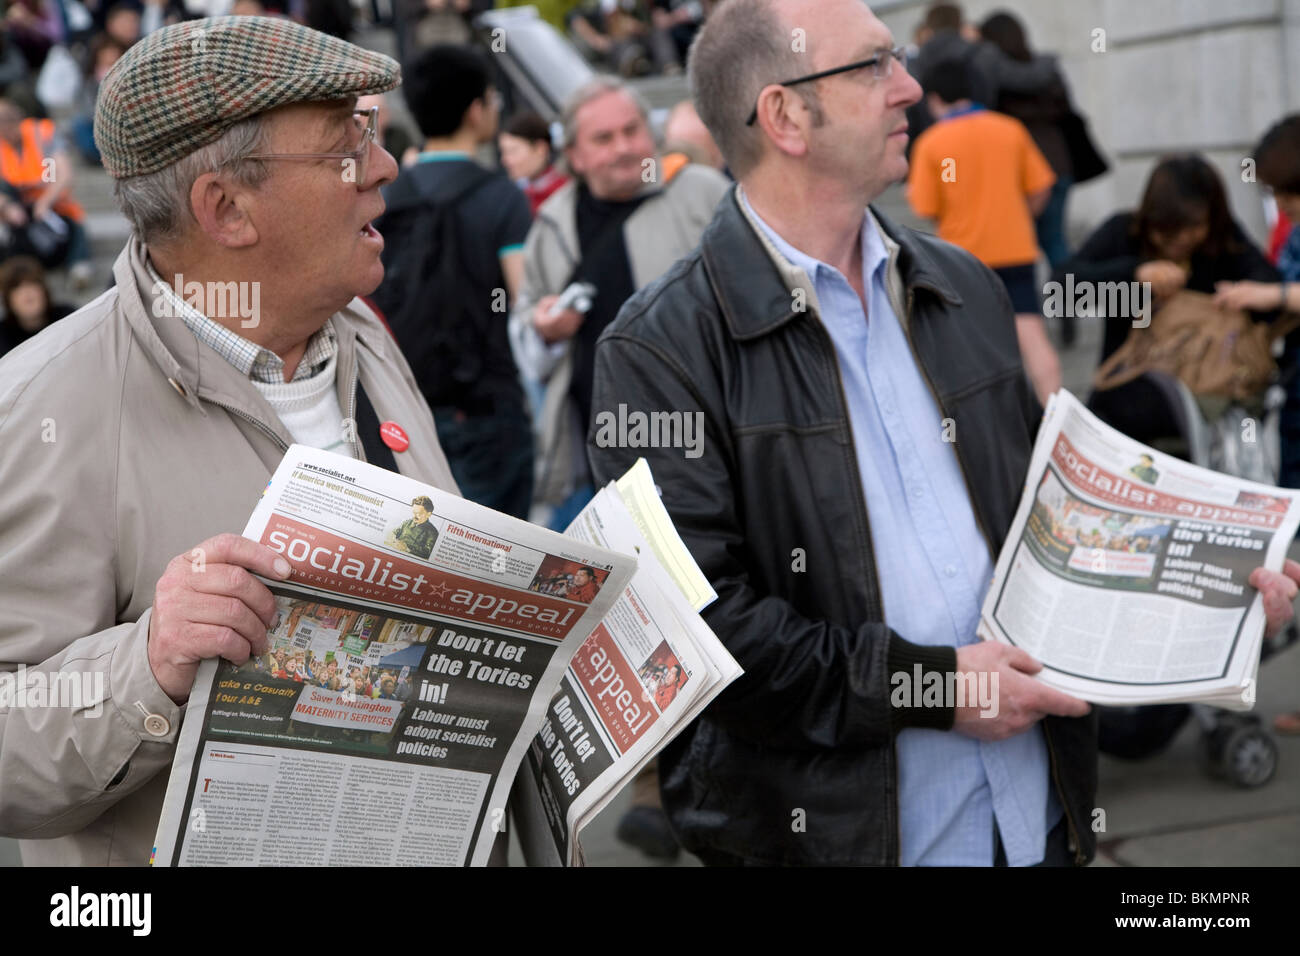 Giorno di maggio e marzo rally, Trafalgar Square, il 1 maggio 2010 Appello socialista giornale carta venditori internazionali di tendenza marxista Foto Stock